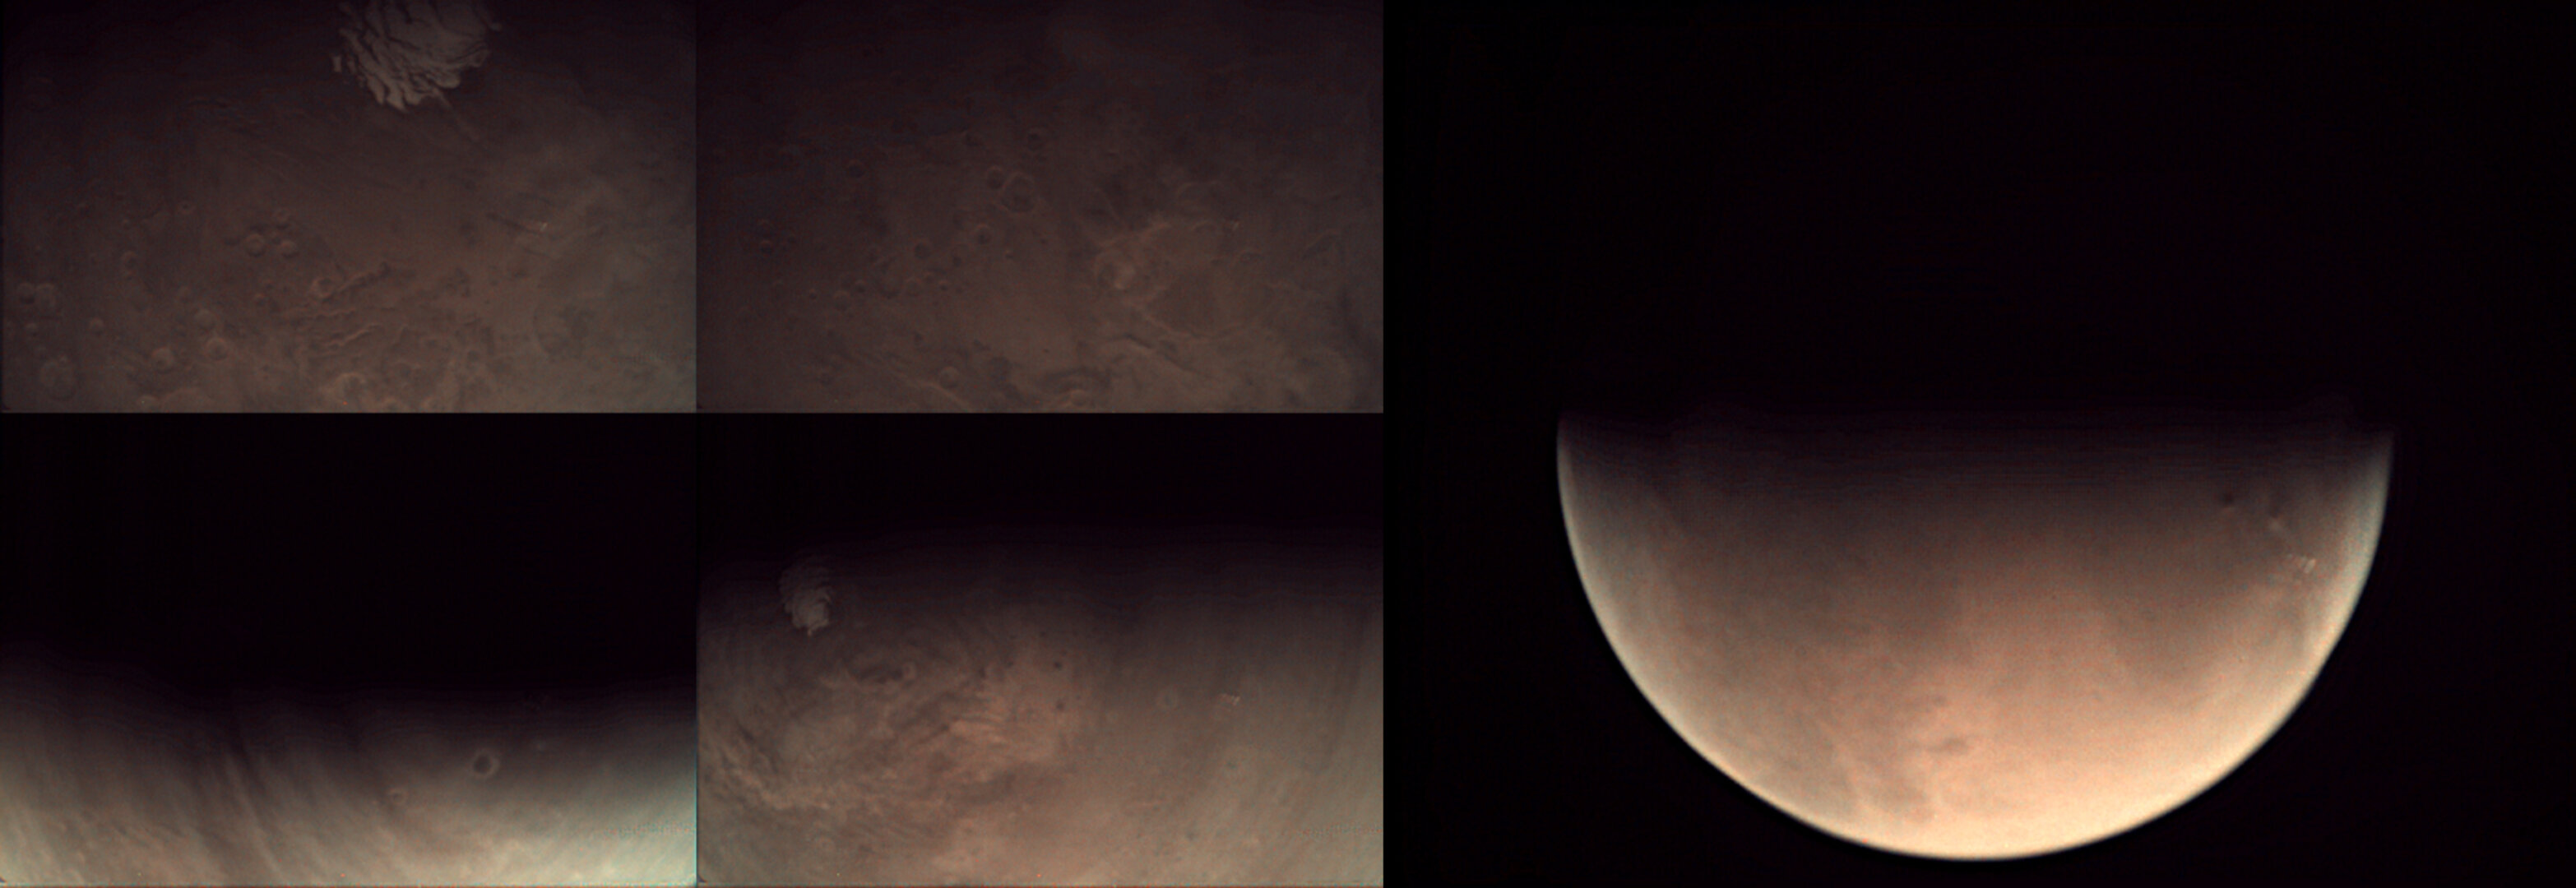 Κολάζ εικόνων που τραβήχτηκαν από τη VMC του Mars Express στις 25 Μαΐου 2015